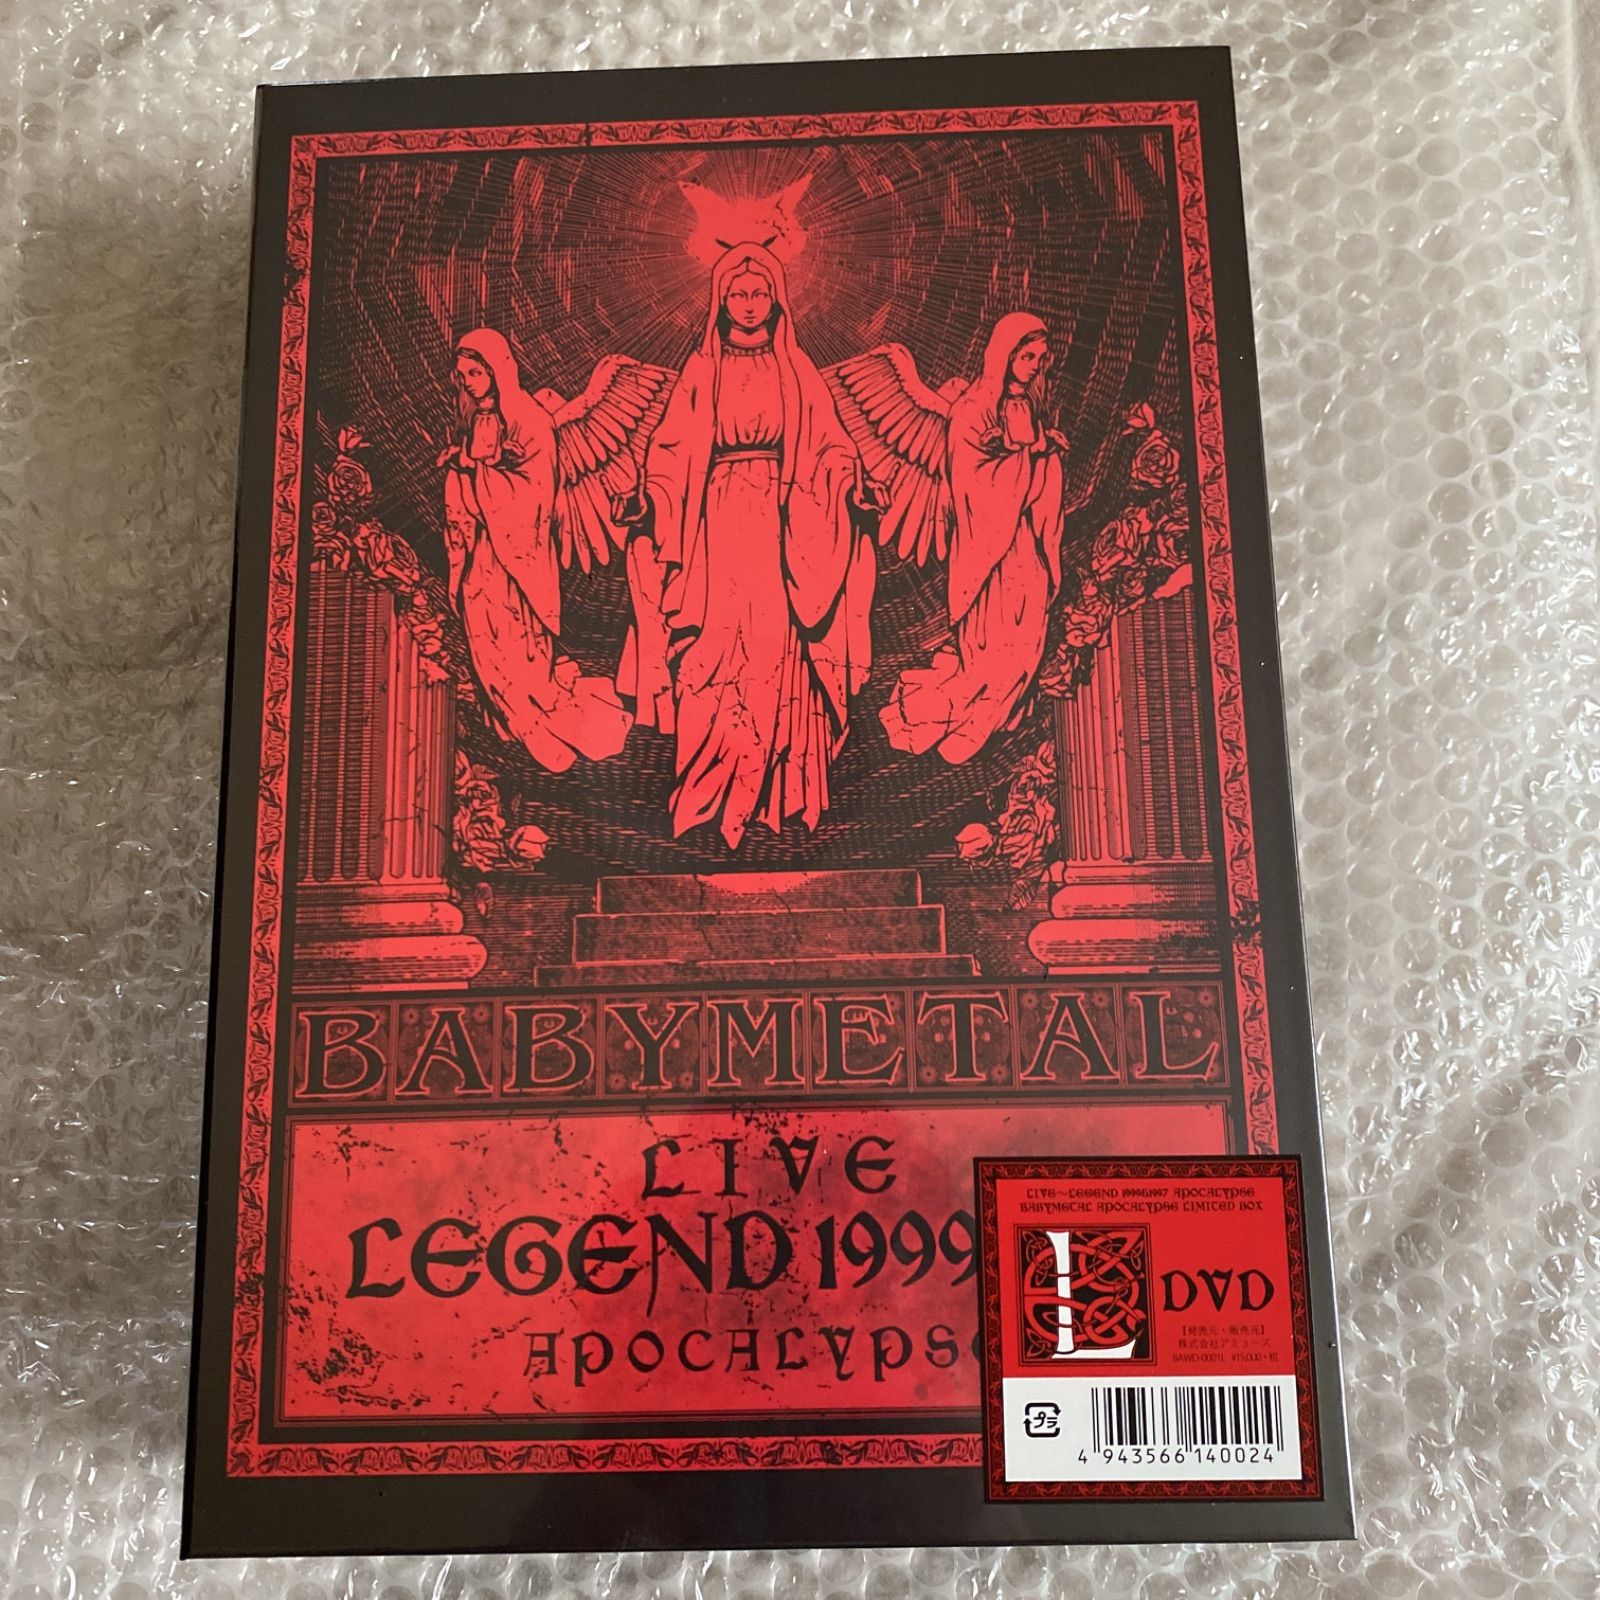 ベビーメタル LIVE LEGEND 1999&1997 DVD BOXTシャツ - SKショップ ...